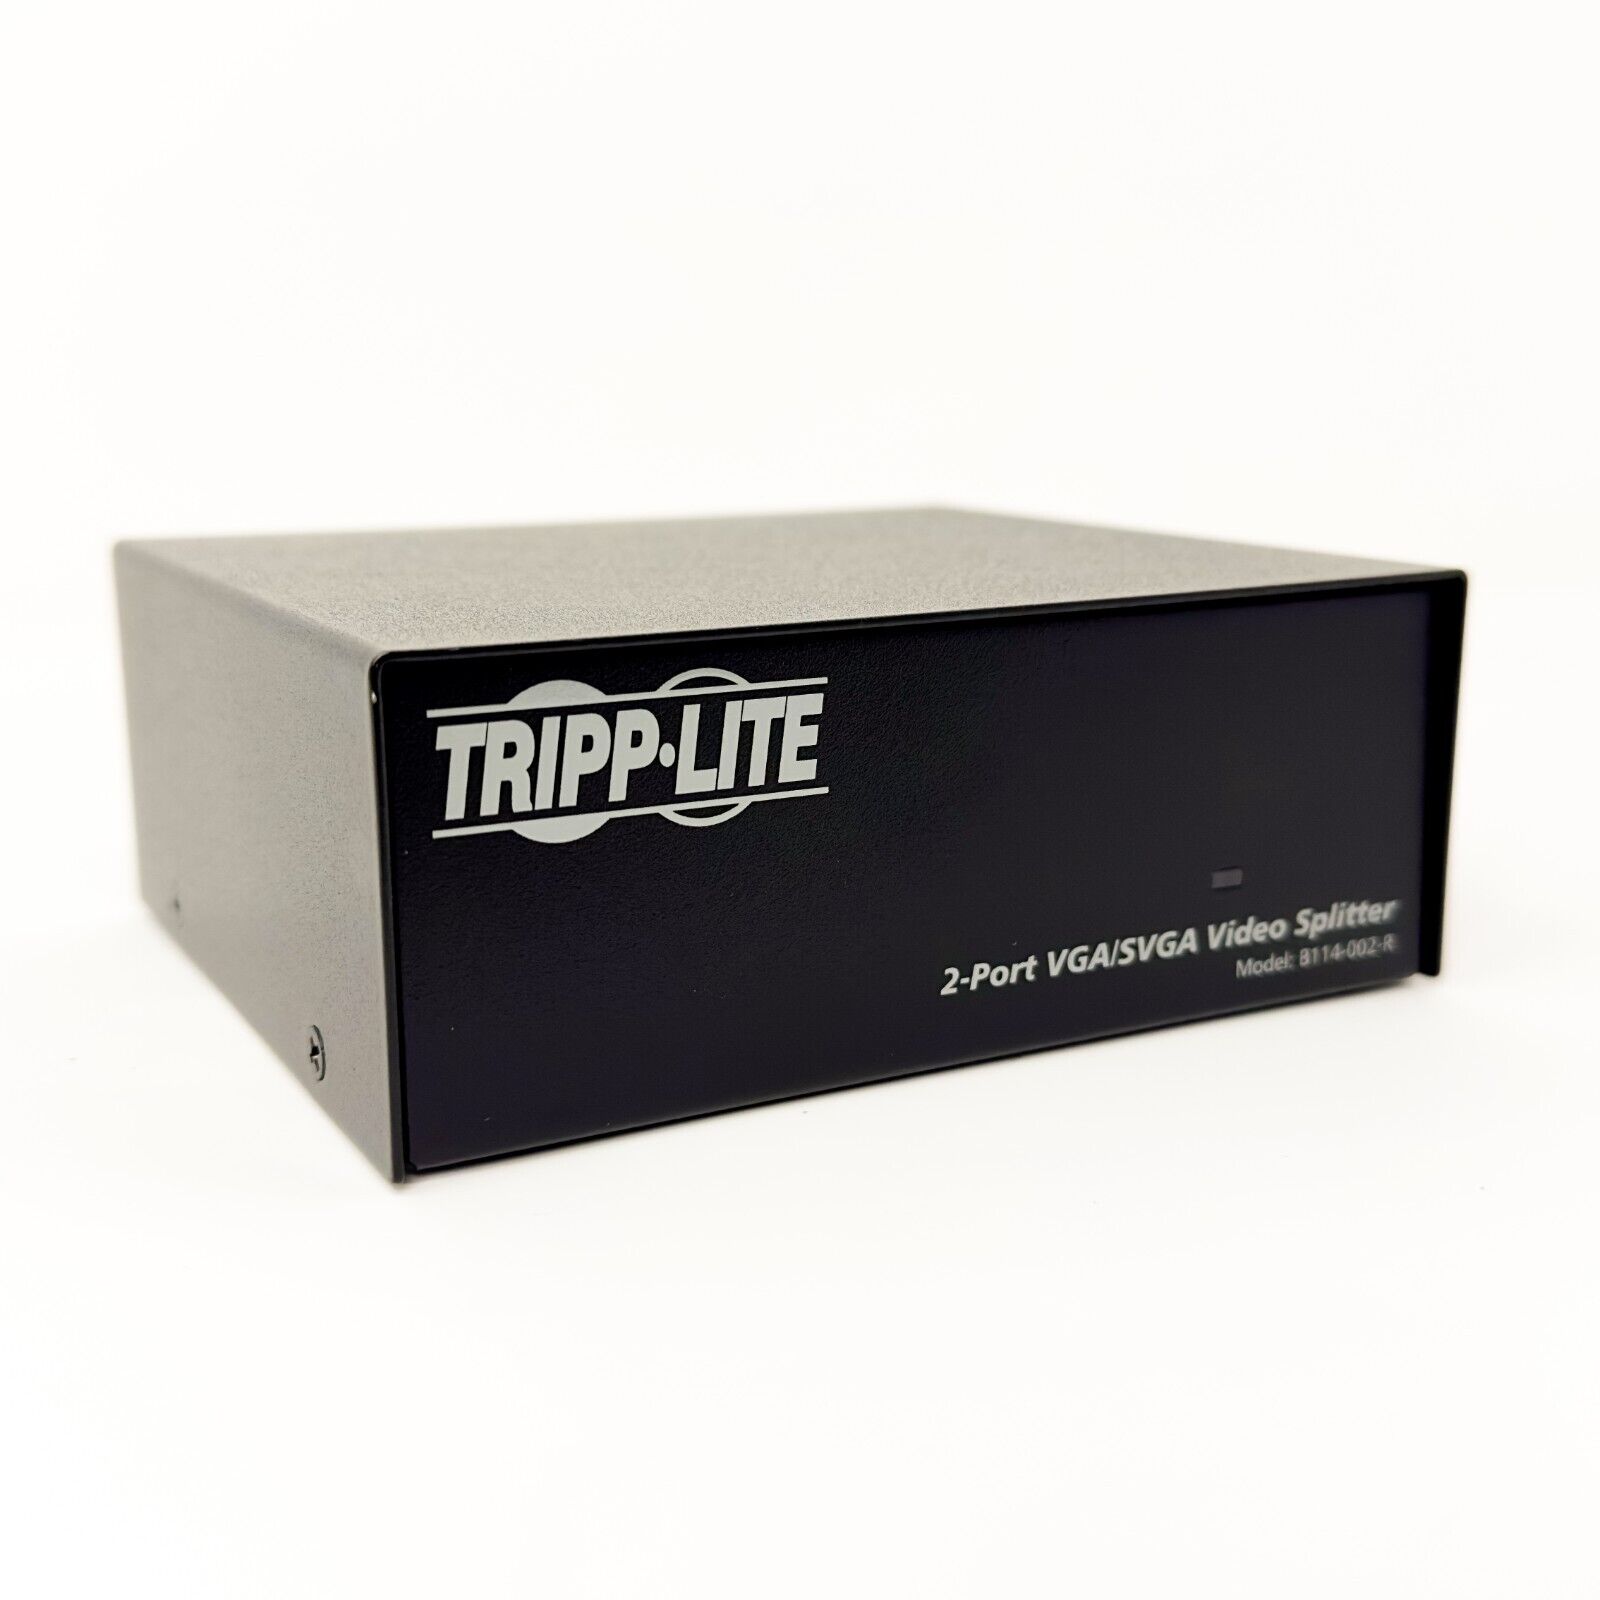 Tripp Lite VGA/SVGA 350 MHz 2-Port Video Splitter w/ Signal Booster (B114-002-R)